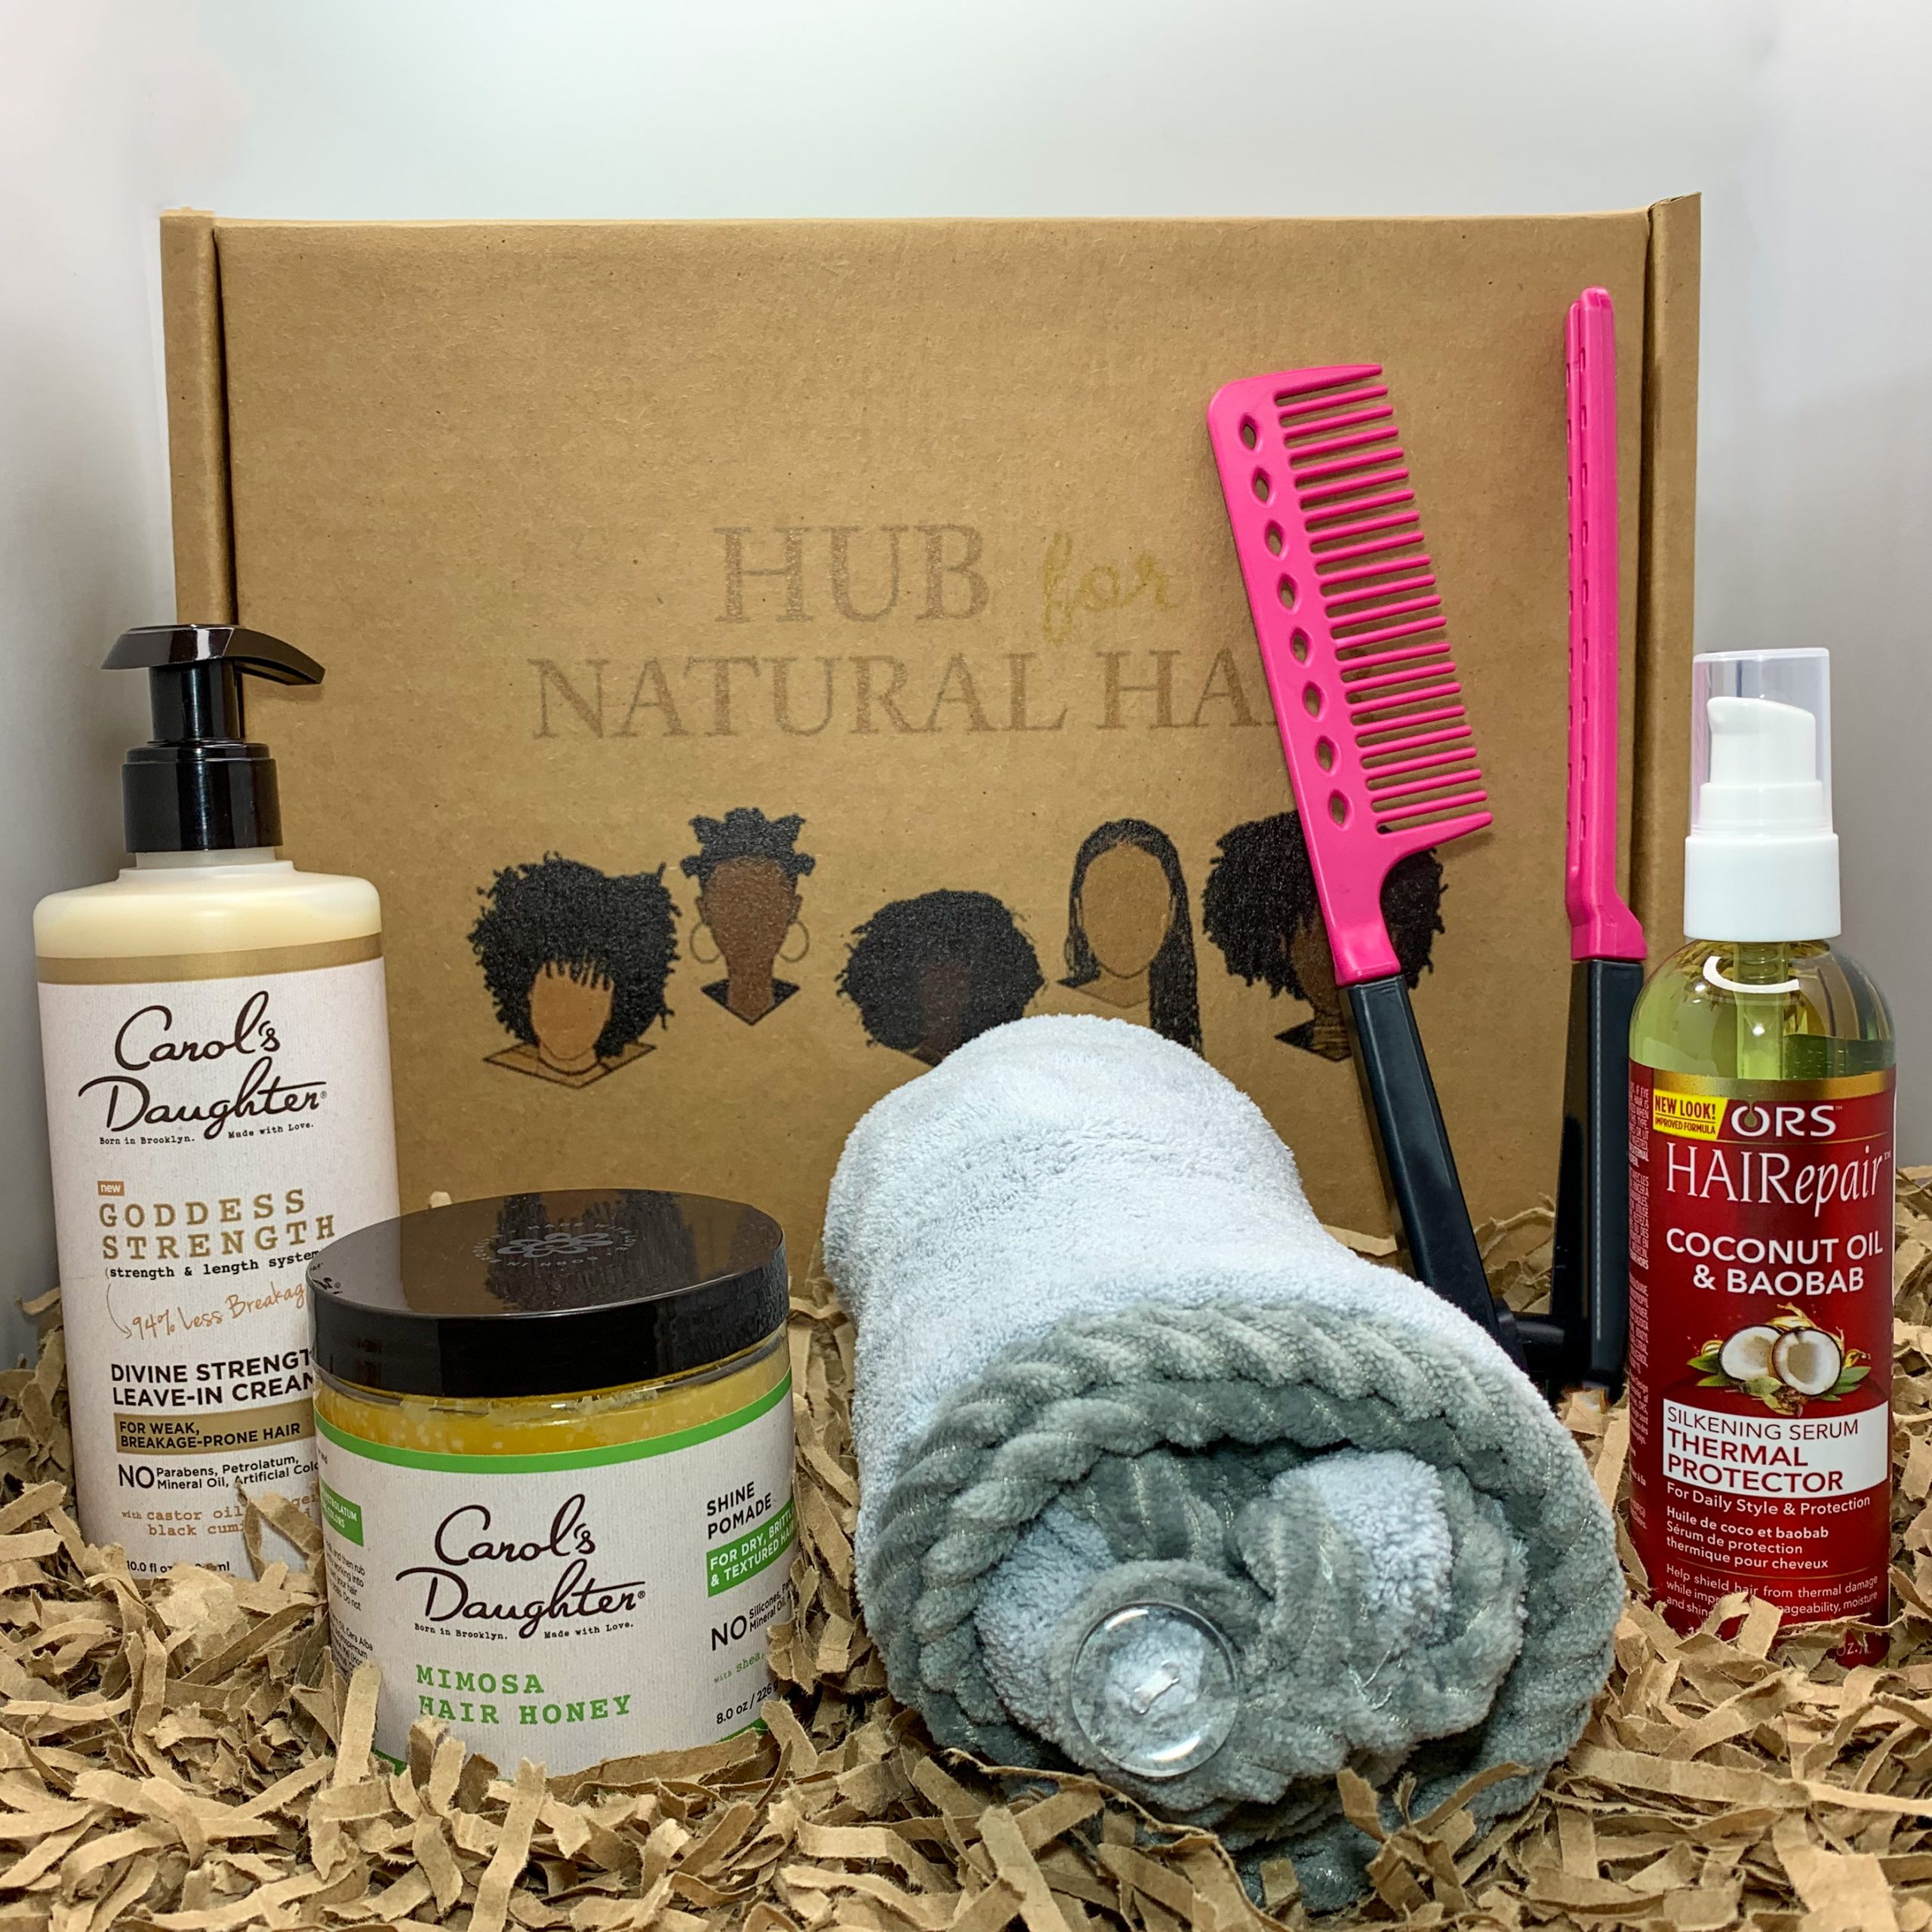 Hub for Natural Hair - Product Box